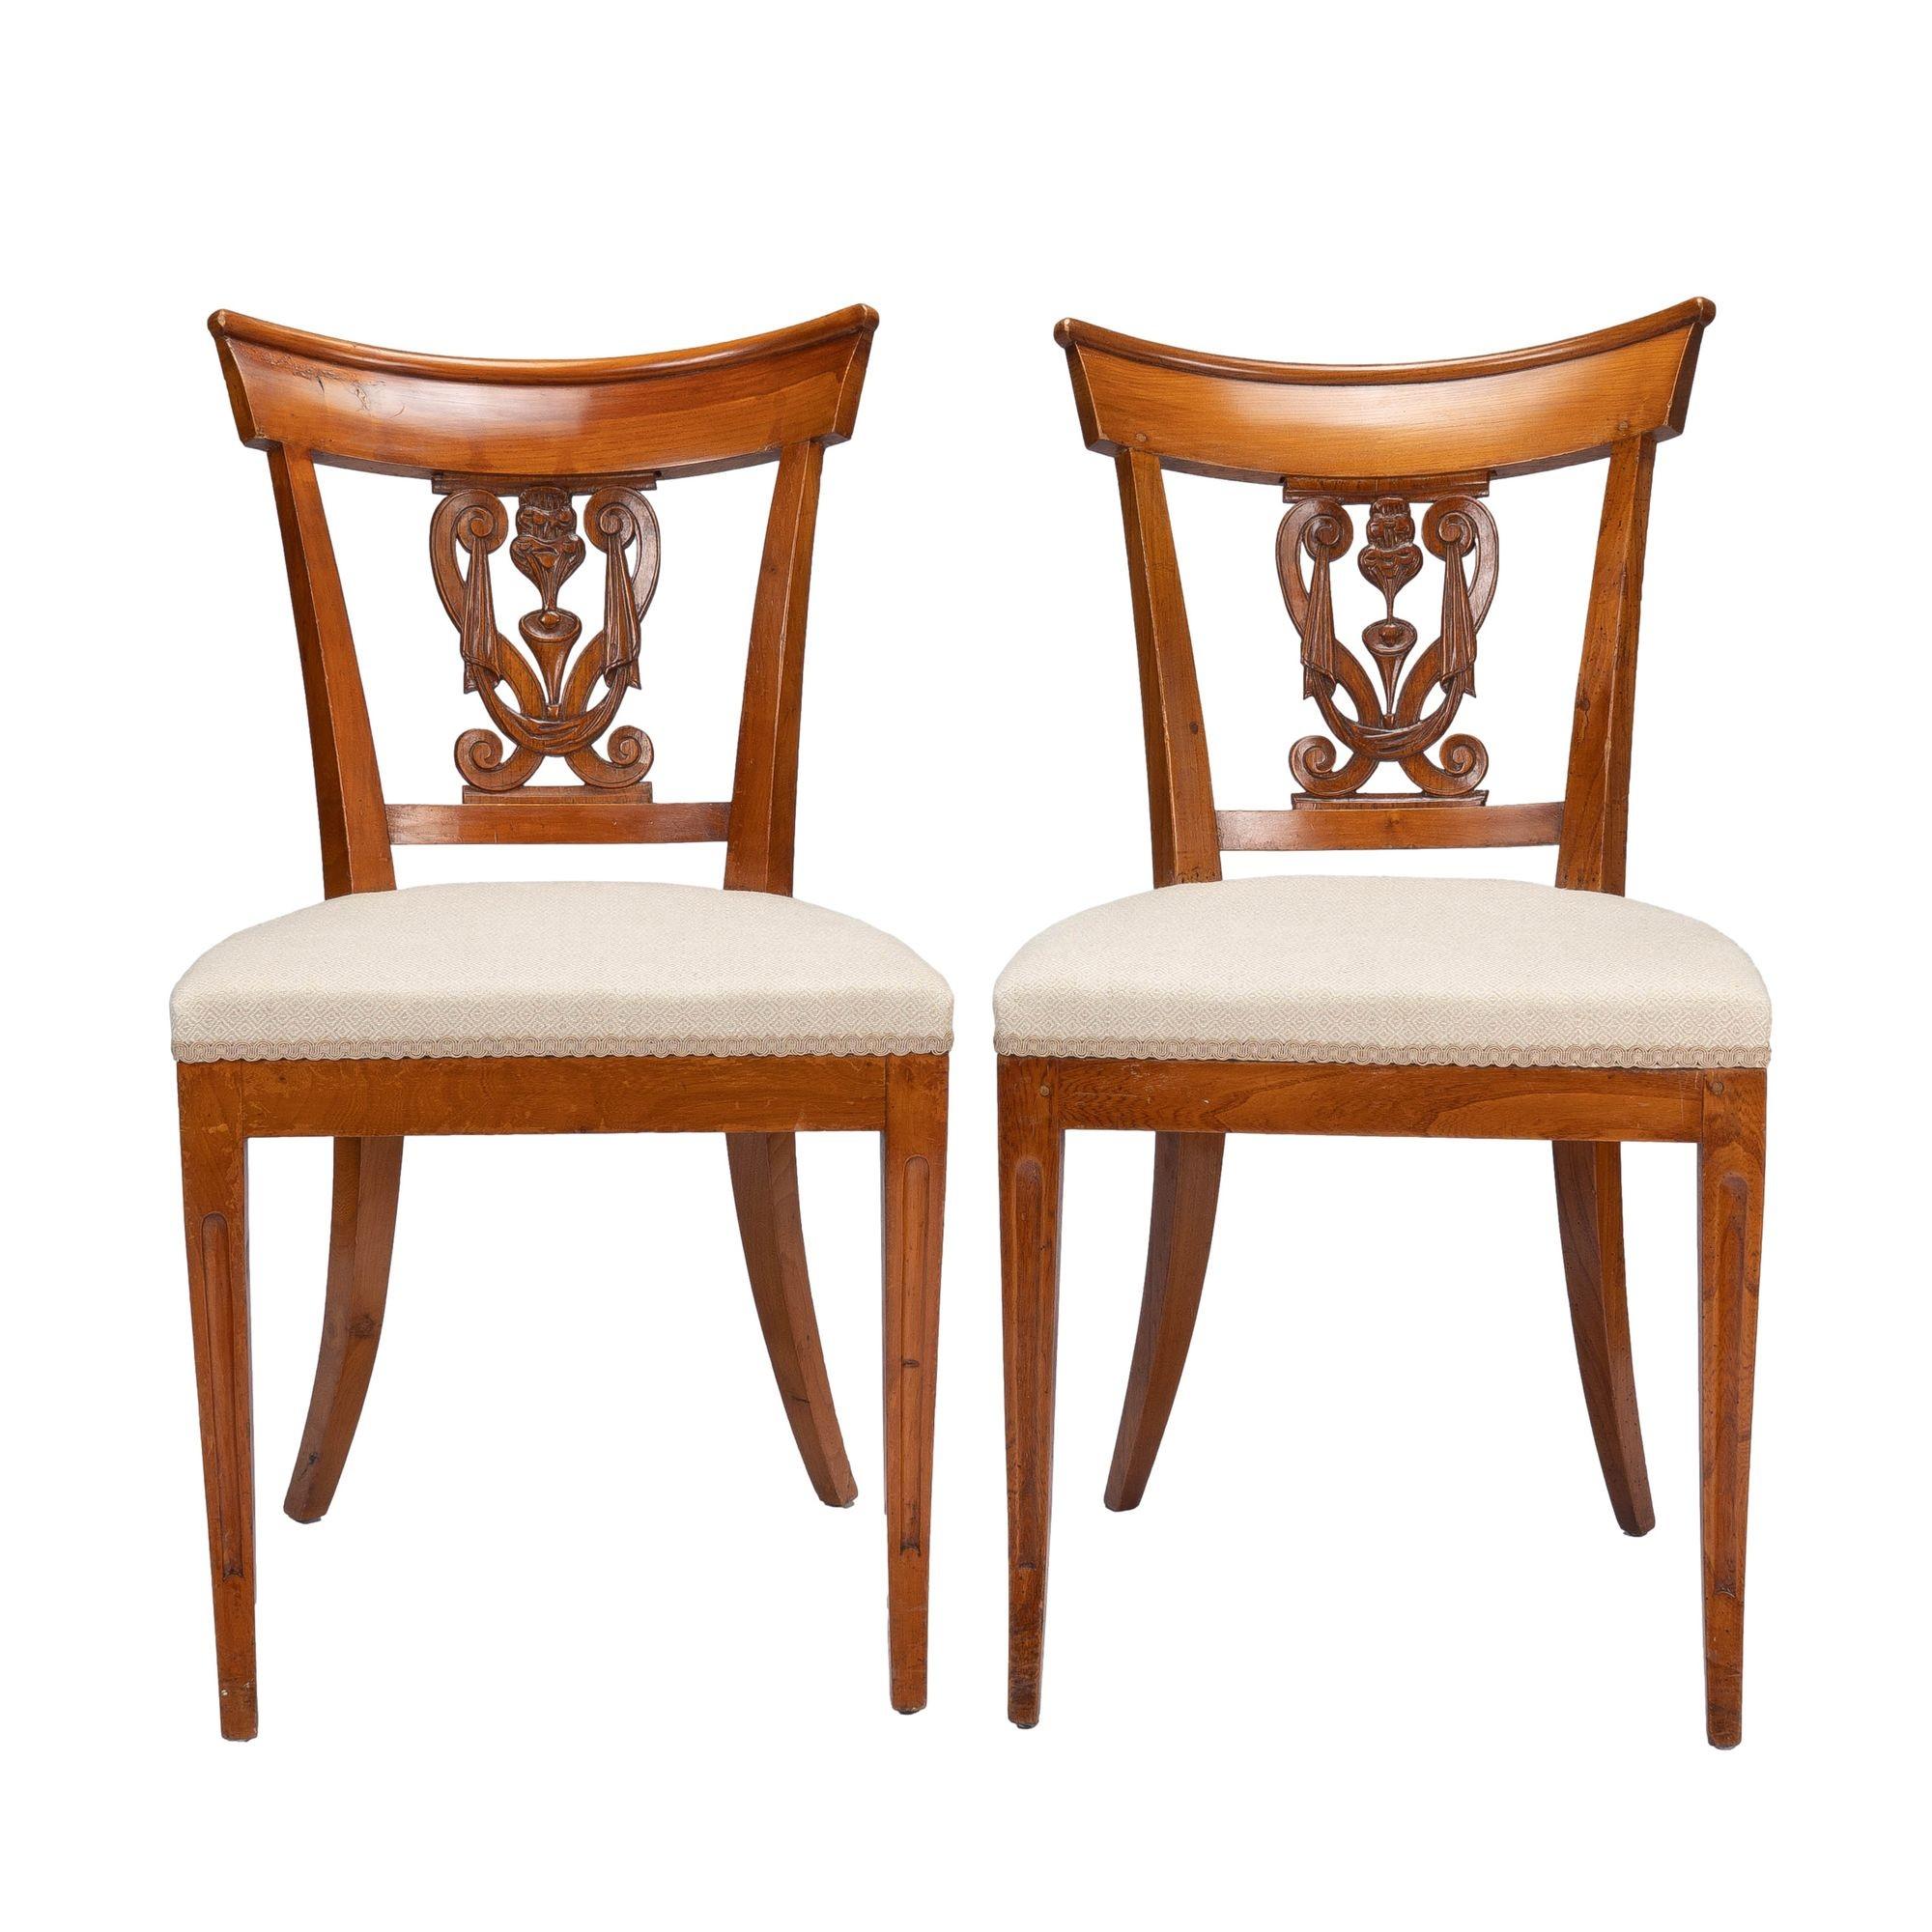 Paar französische neoklassische Stühle mit gepolstertem Sitz. Die Stühle zeichnen sich durch säbelförmige Vorder- und schräge Hinterbeine aus, die einen gepolsterten Kastensitz tragen. Die gespreizten oberen Beinpfosten werden durch eine untere